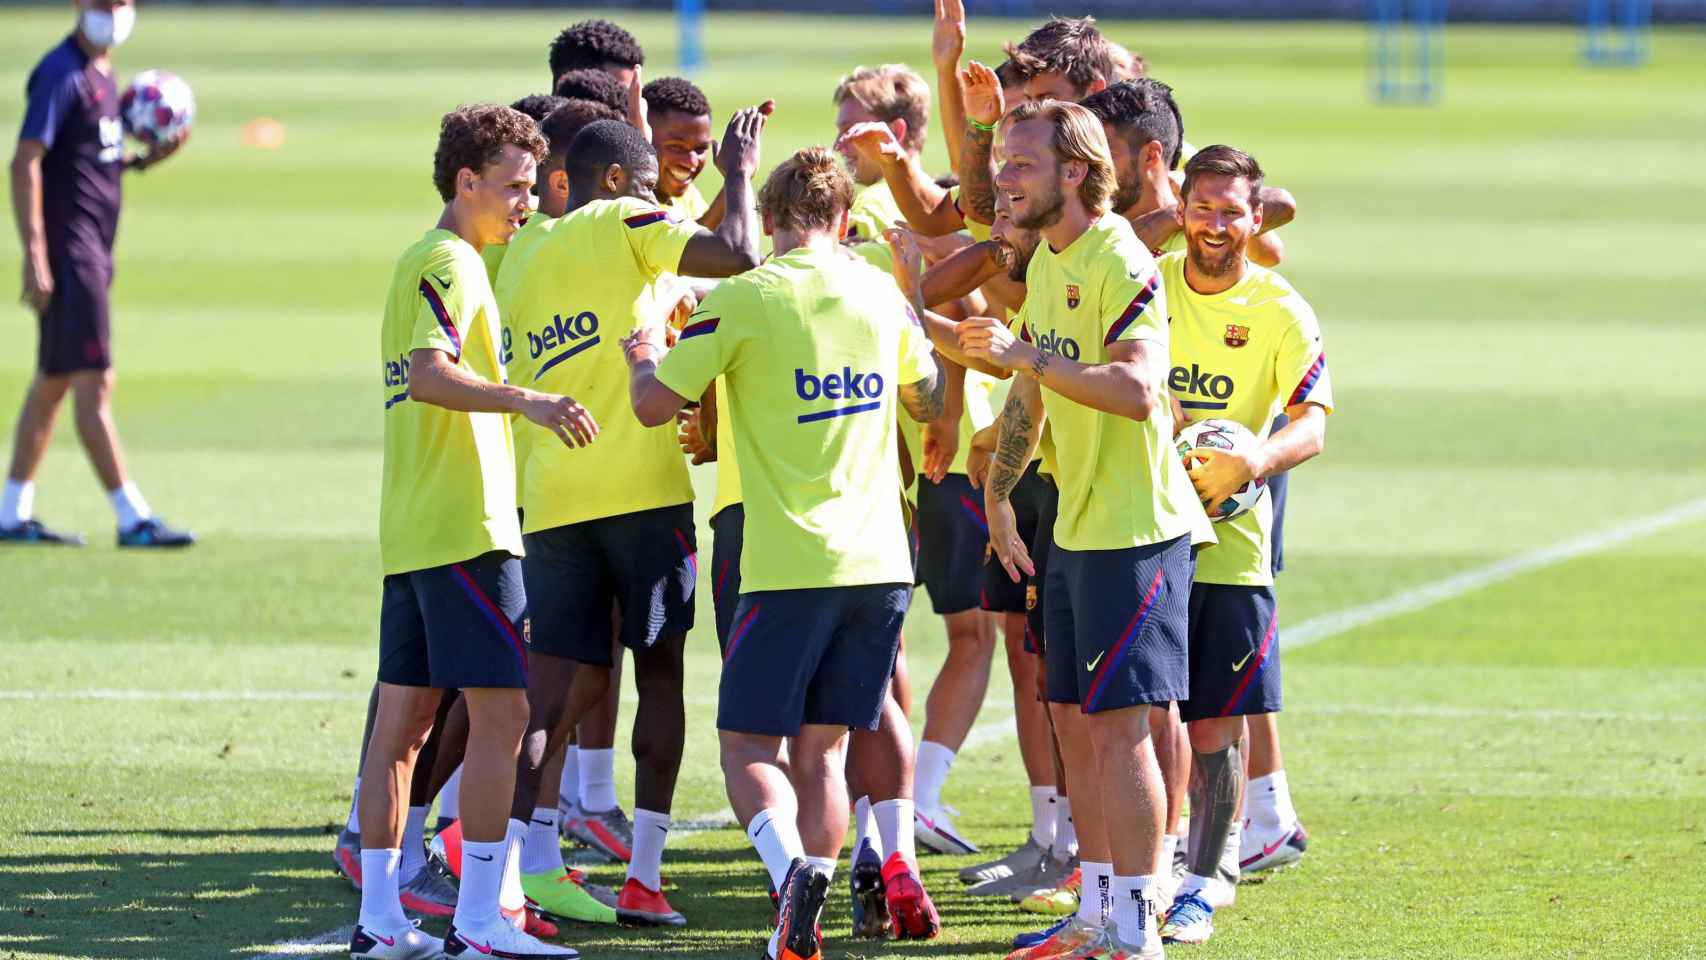 Los jugadores del Barça divirtiéndose durante un entrenamiento / FC Barcelona